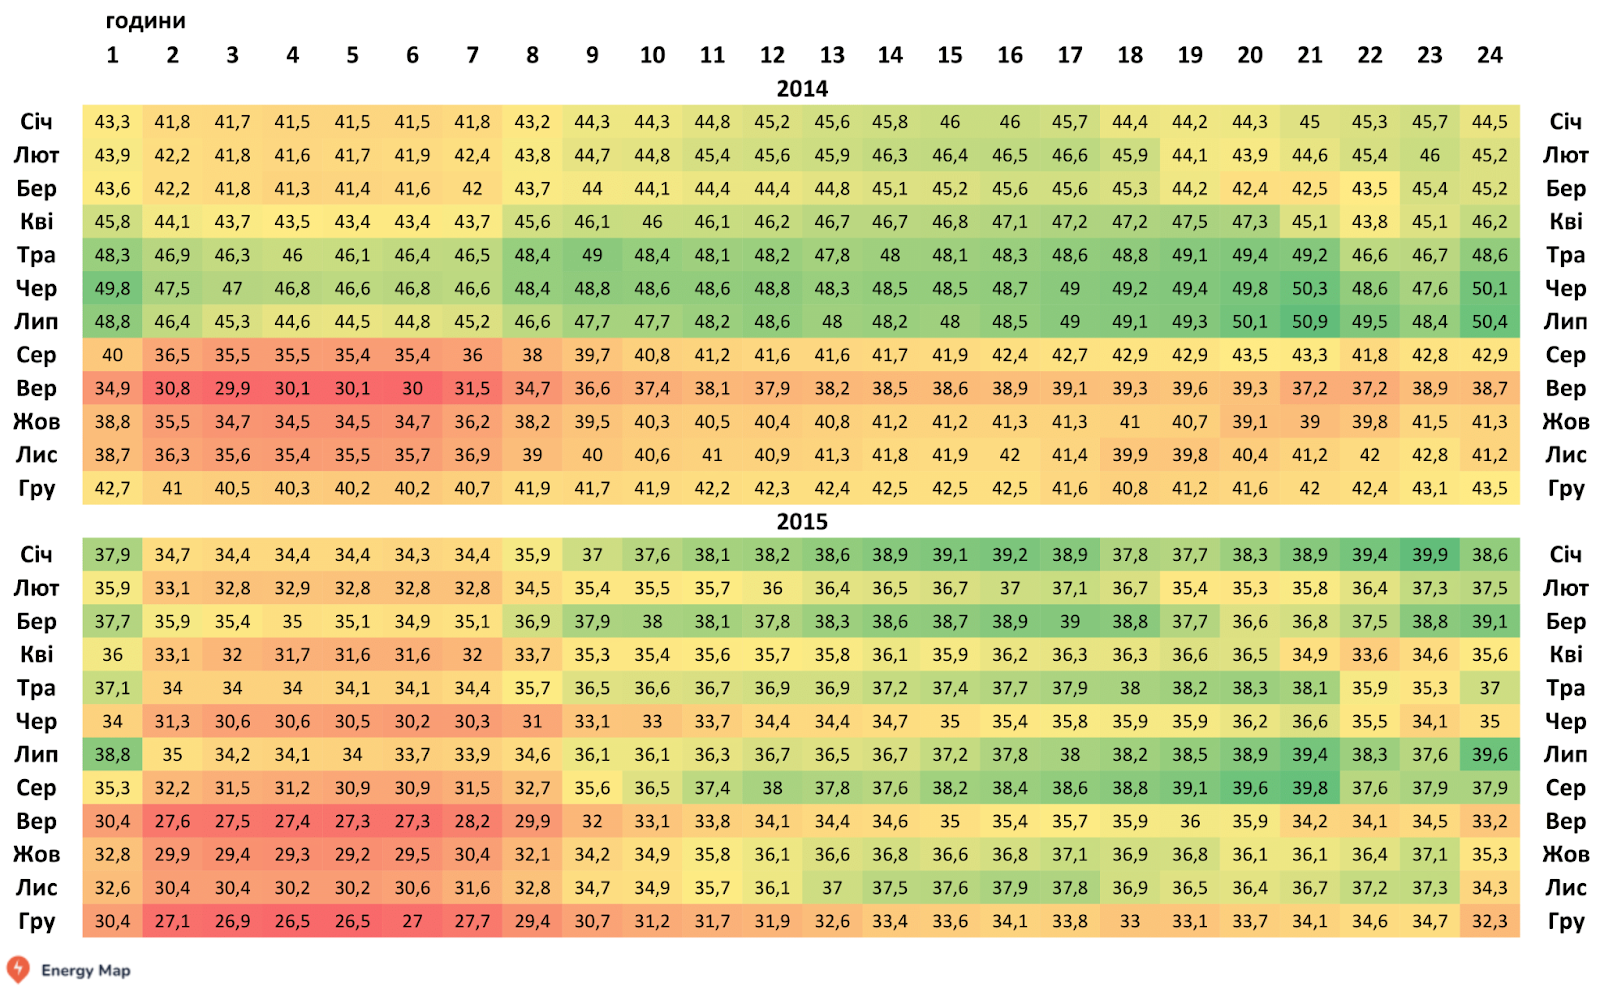 Червоним позначено години, коли частка генерації ТЕС була найменша, зеленим – найбільша. Джерело: НЕК “Укренерго”